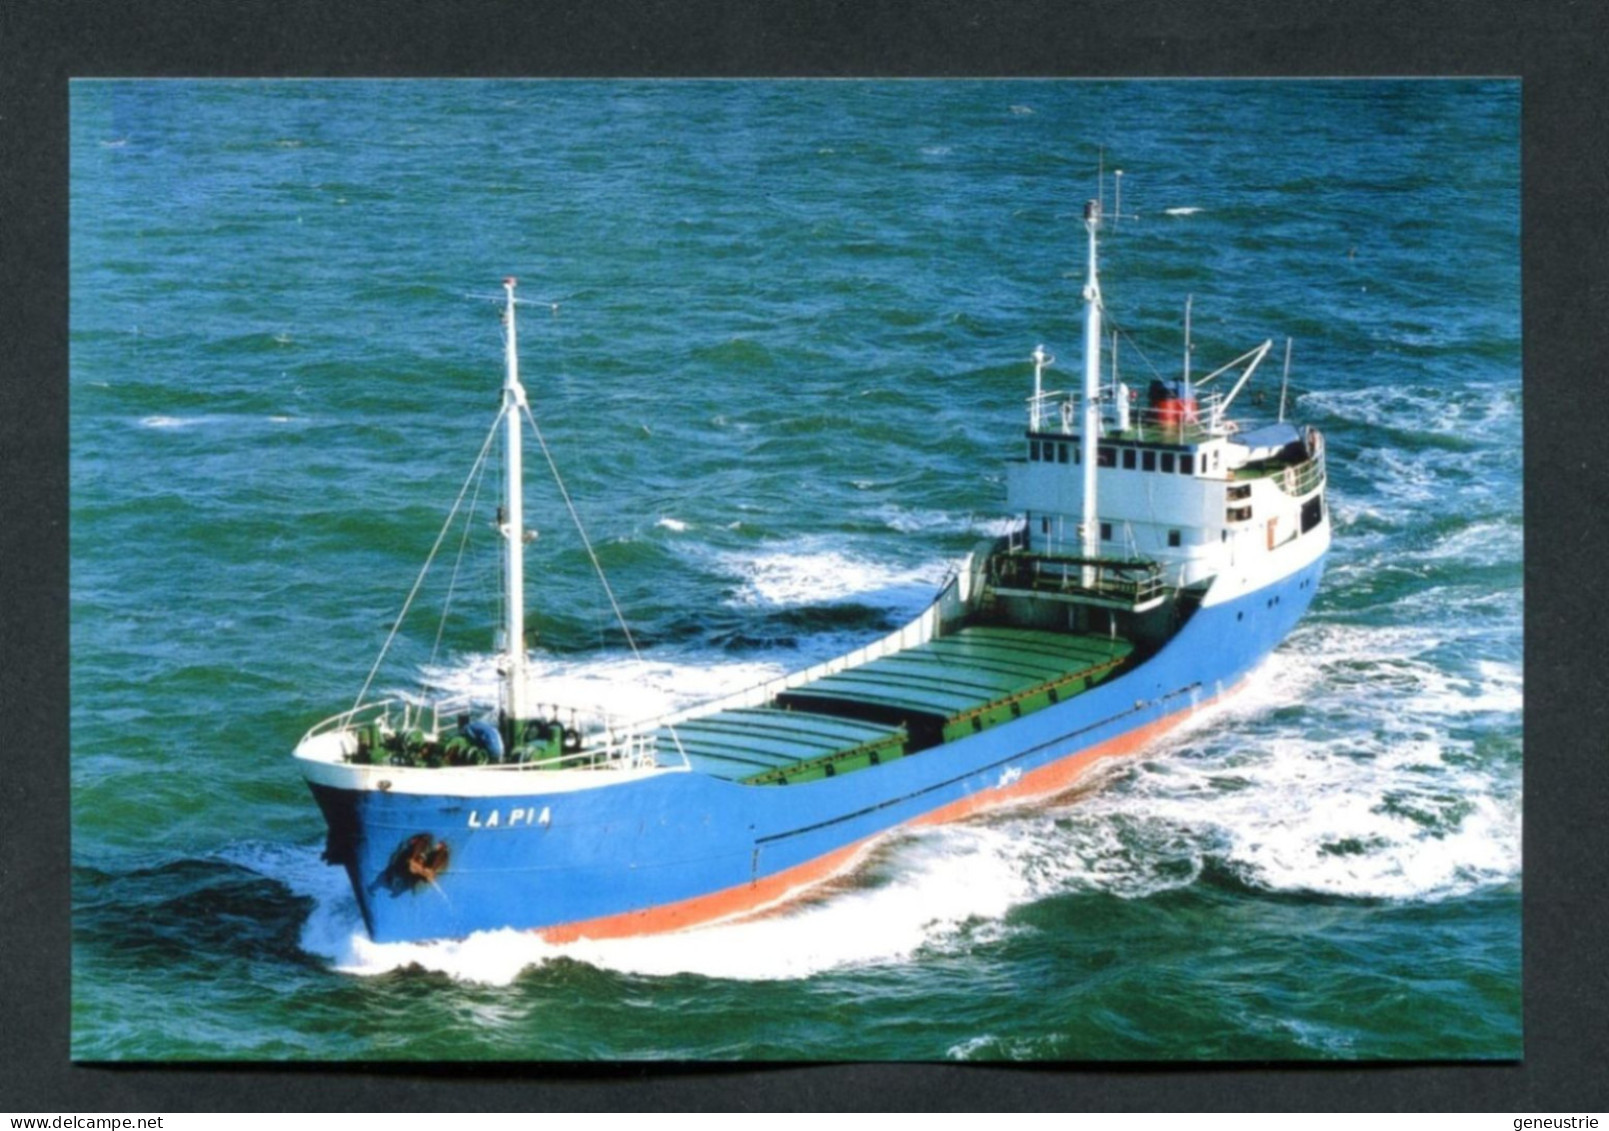 Carte-photo Moderne - Cargo " La Pia " Vers 1995 Au Large D'Aurigny (Alderney)" Normandie - Commercio